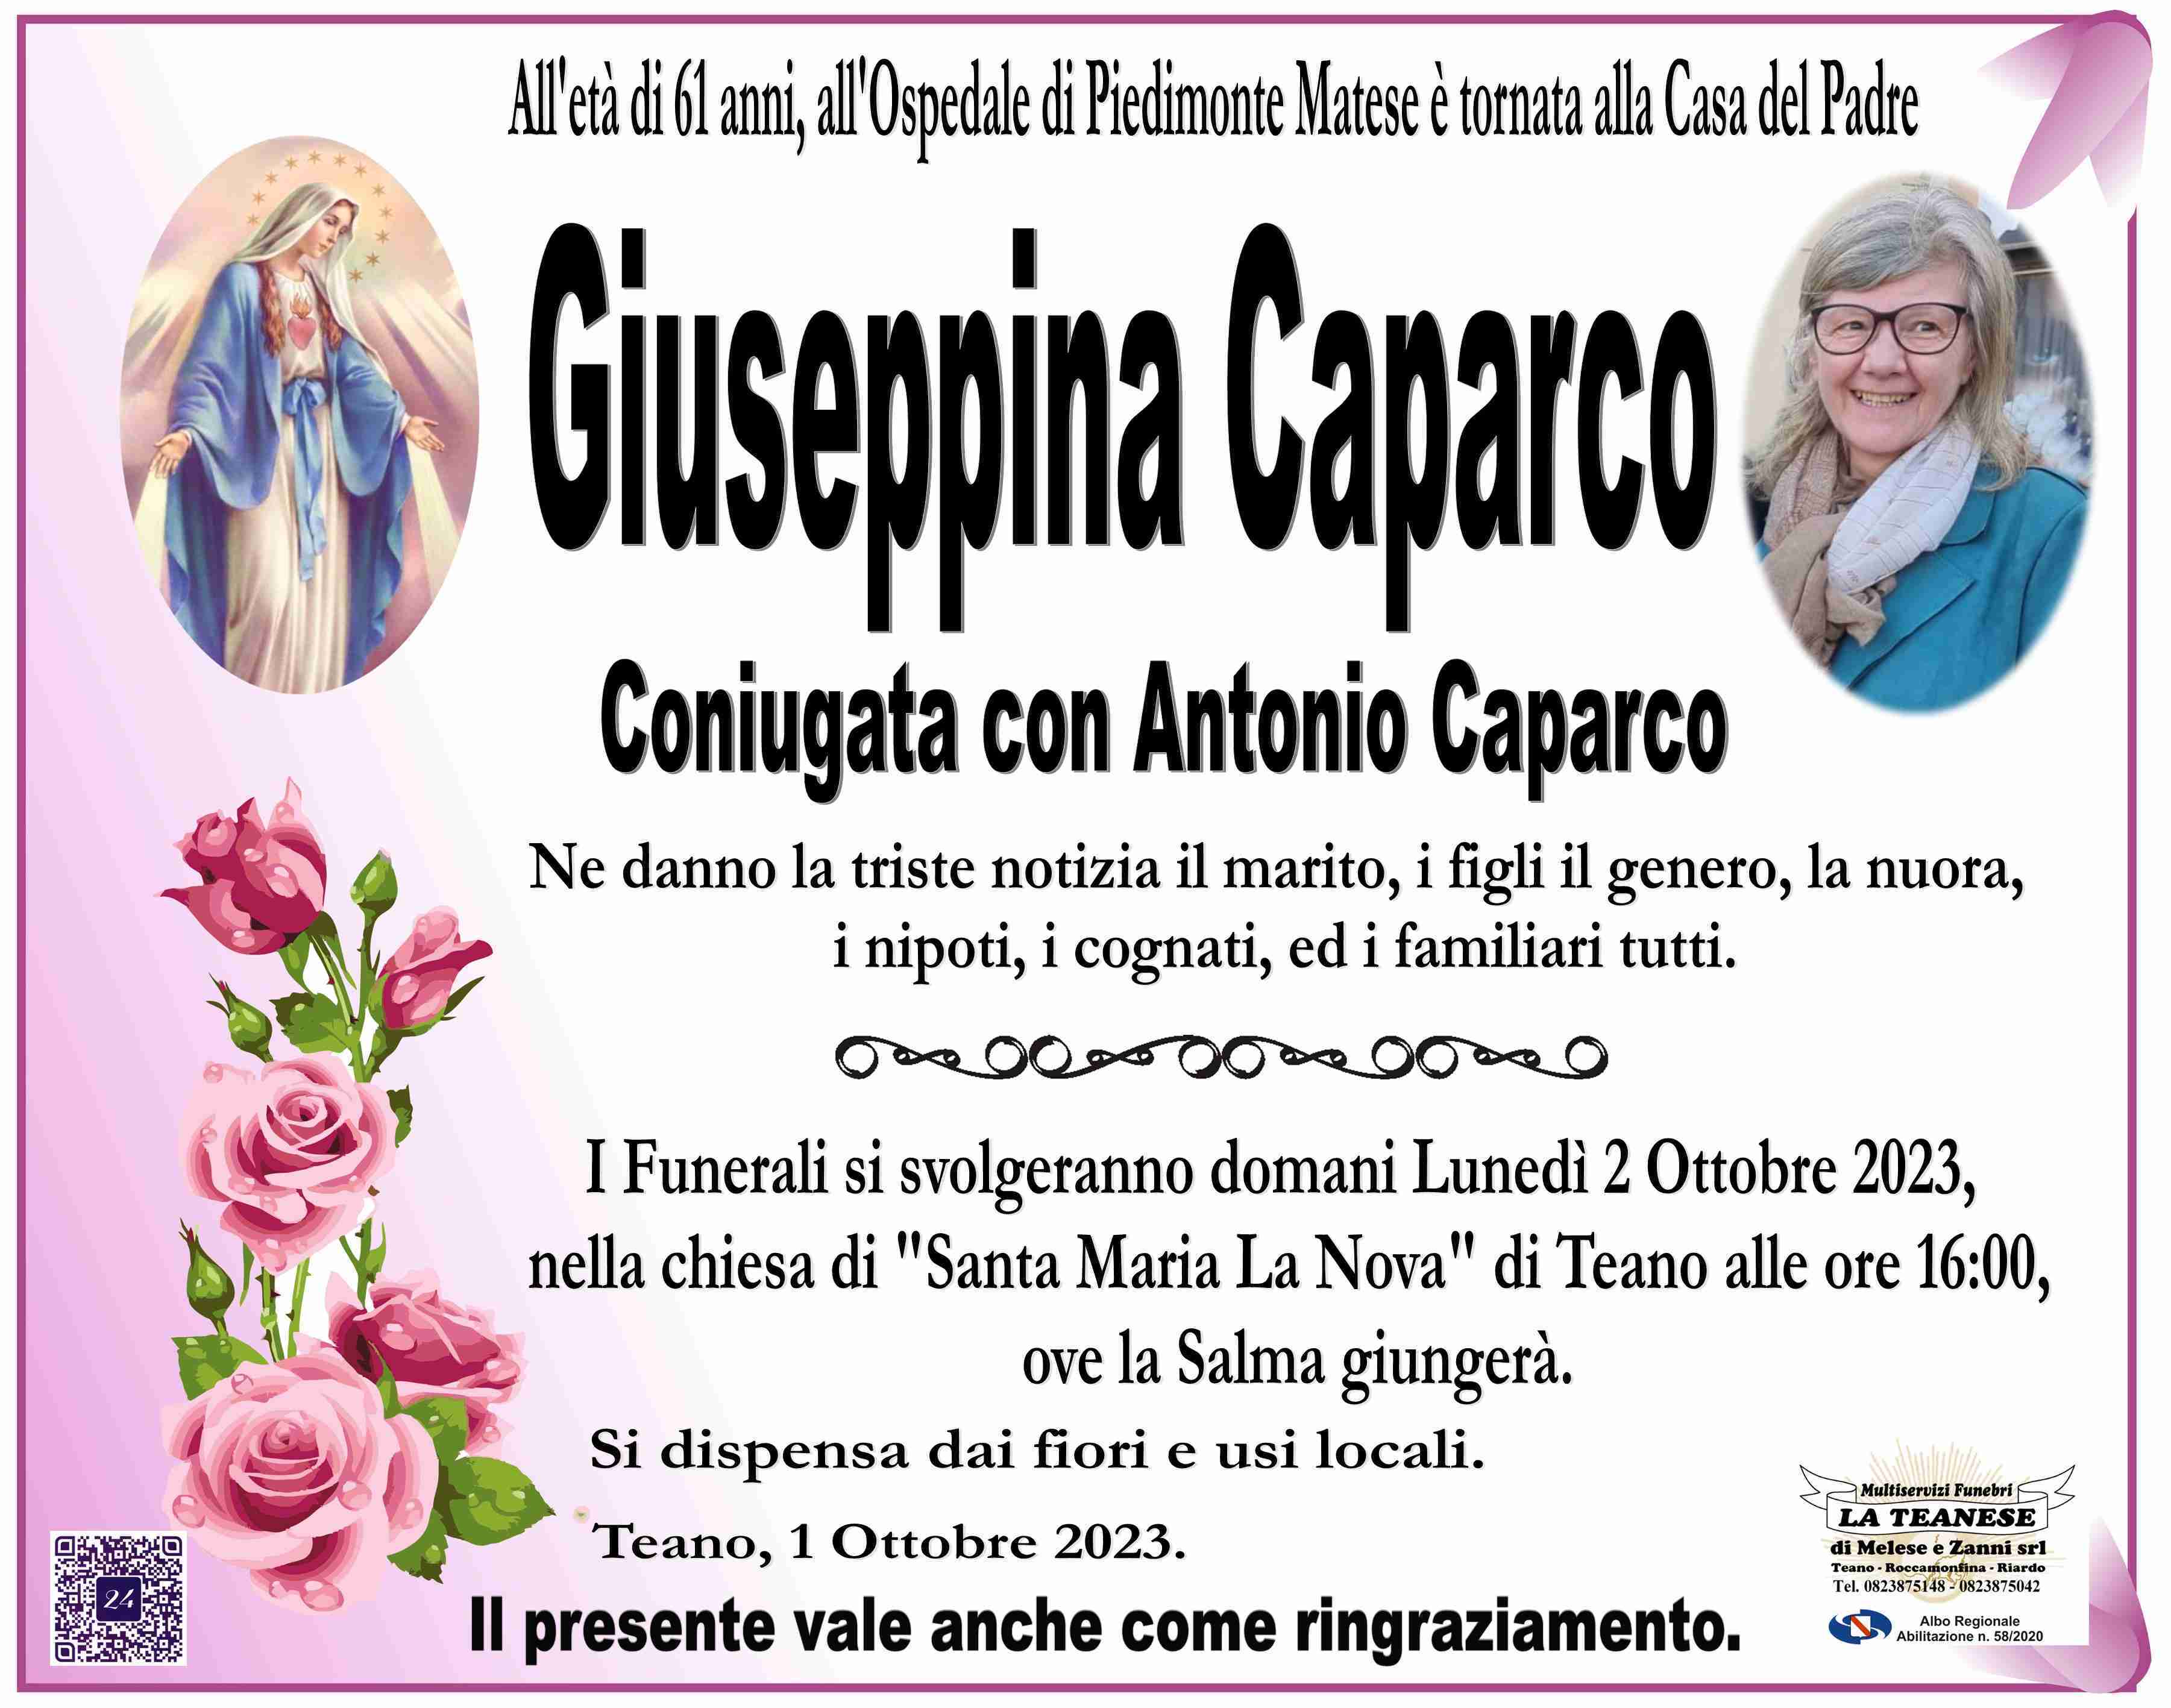 Giuseppina Caparco